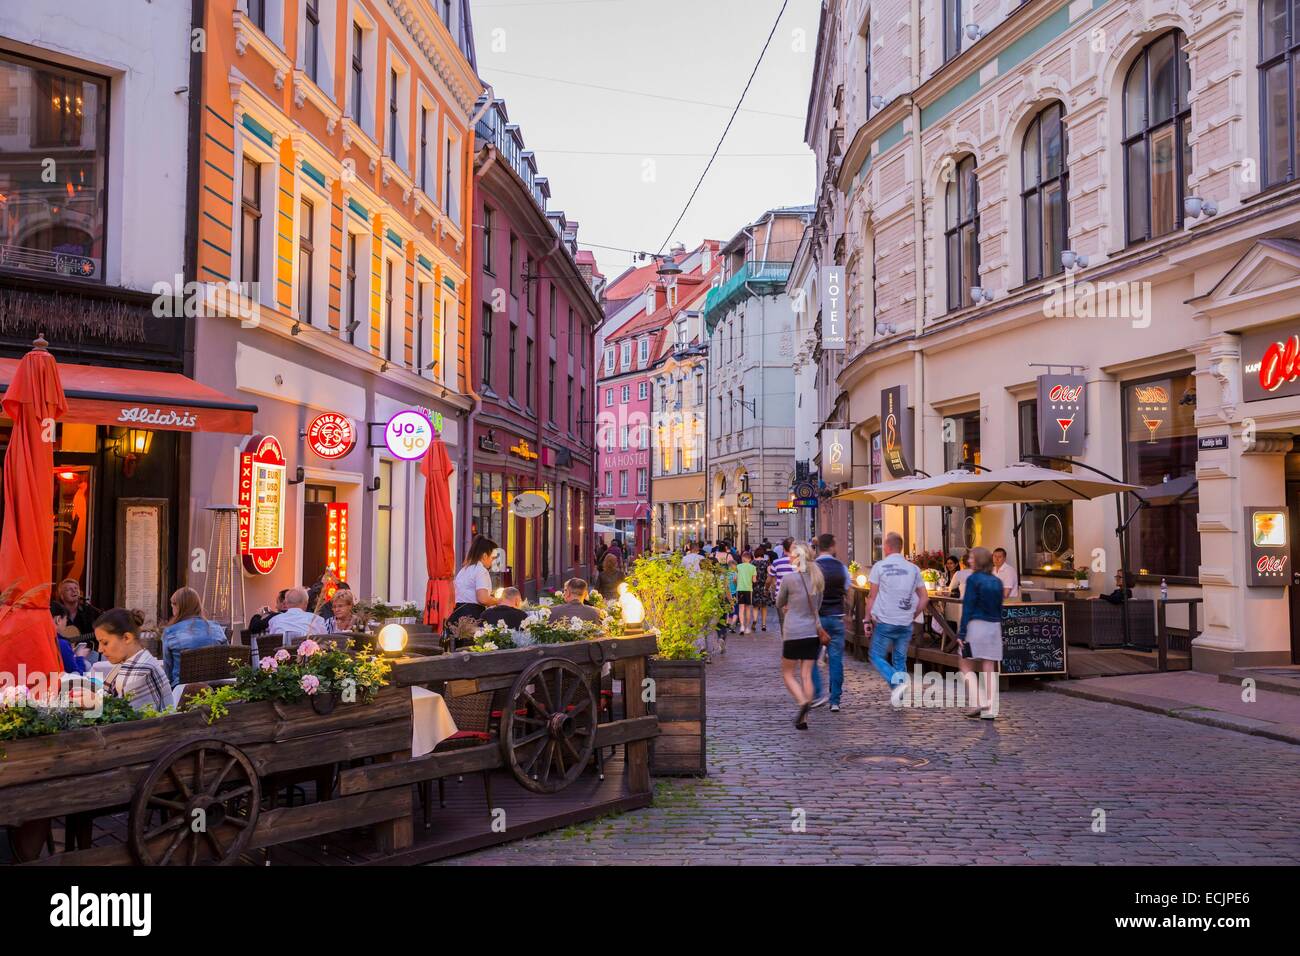 La lettonia (Paesi Baltici), Riga, capitale europea della cultura 2014, centro storico elencati come patrimonio mondiale dall' UNESCO, terrasses nel centro della città, Jauniela street Foto Stock